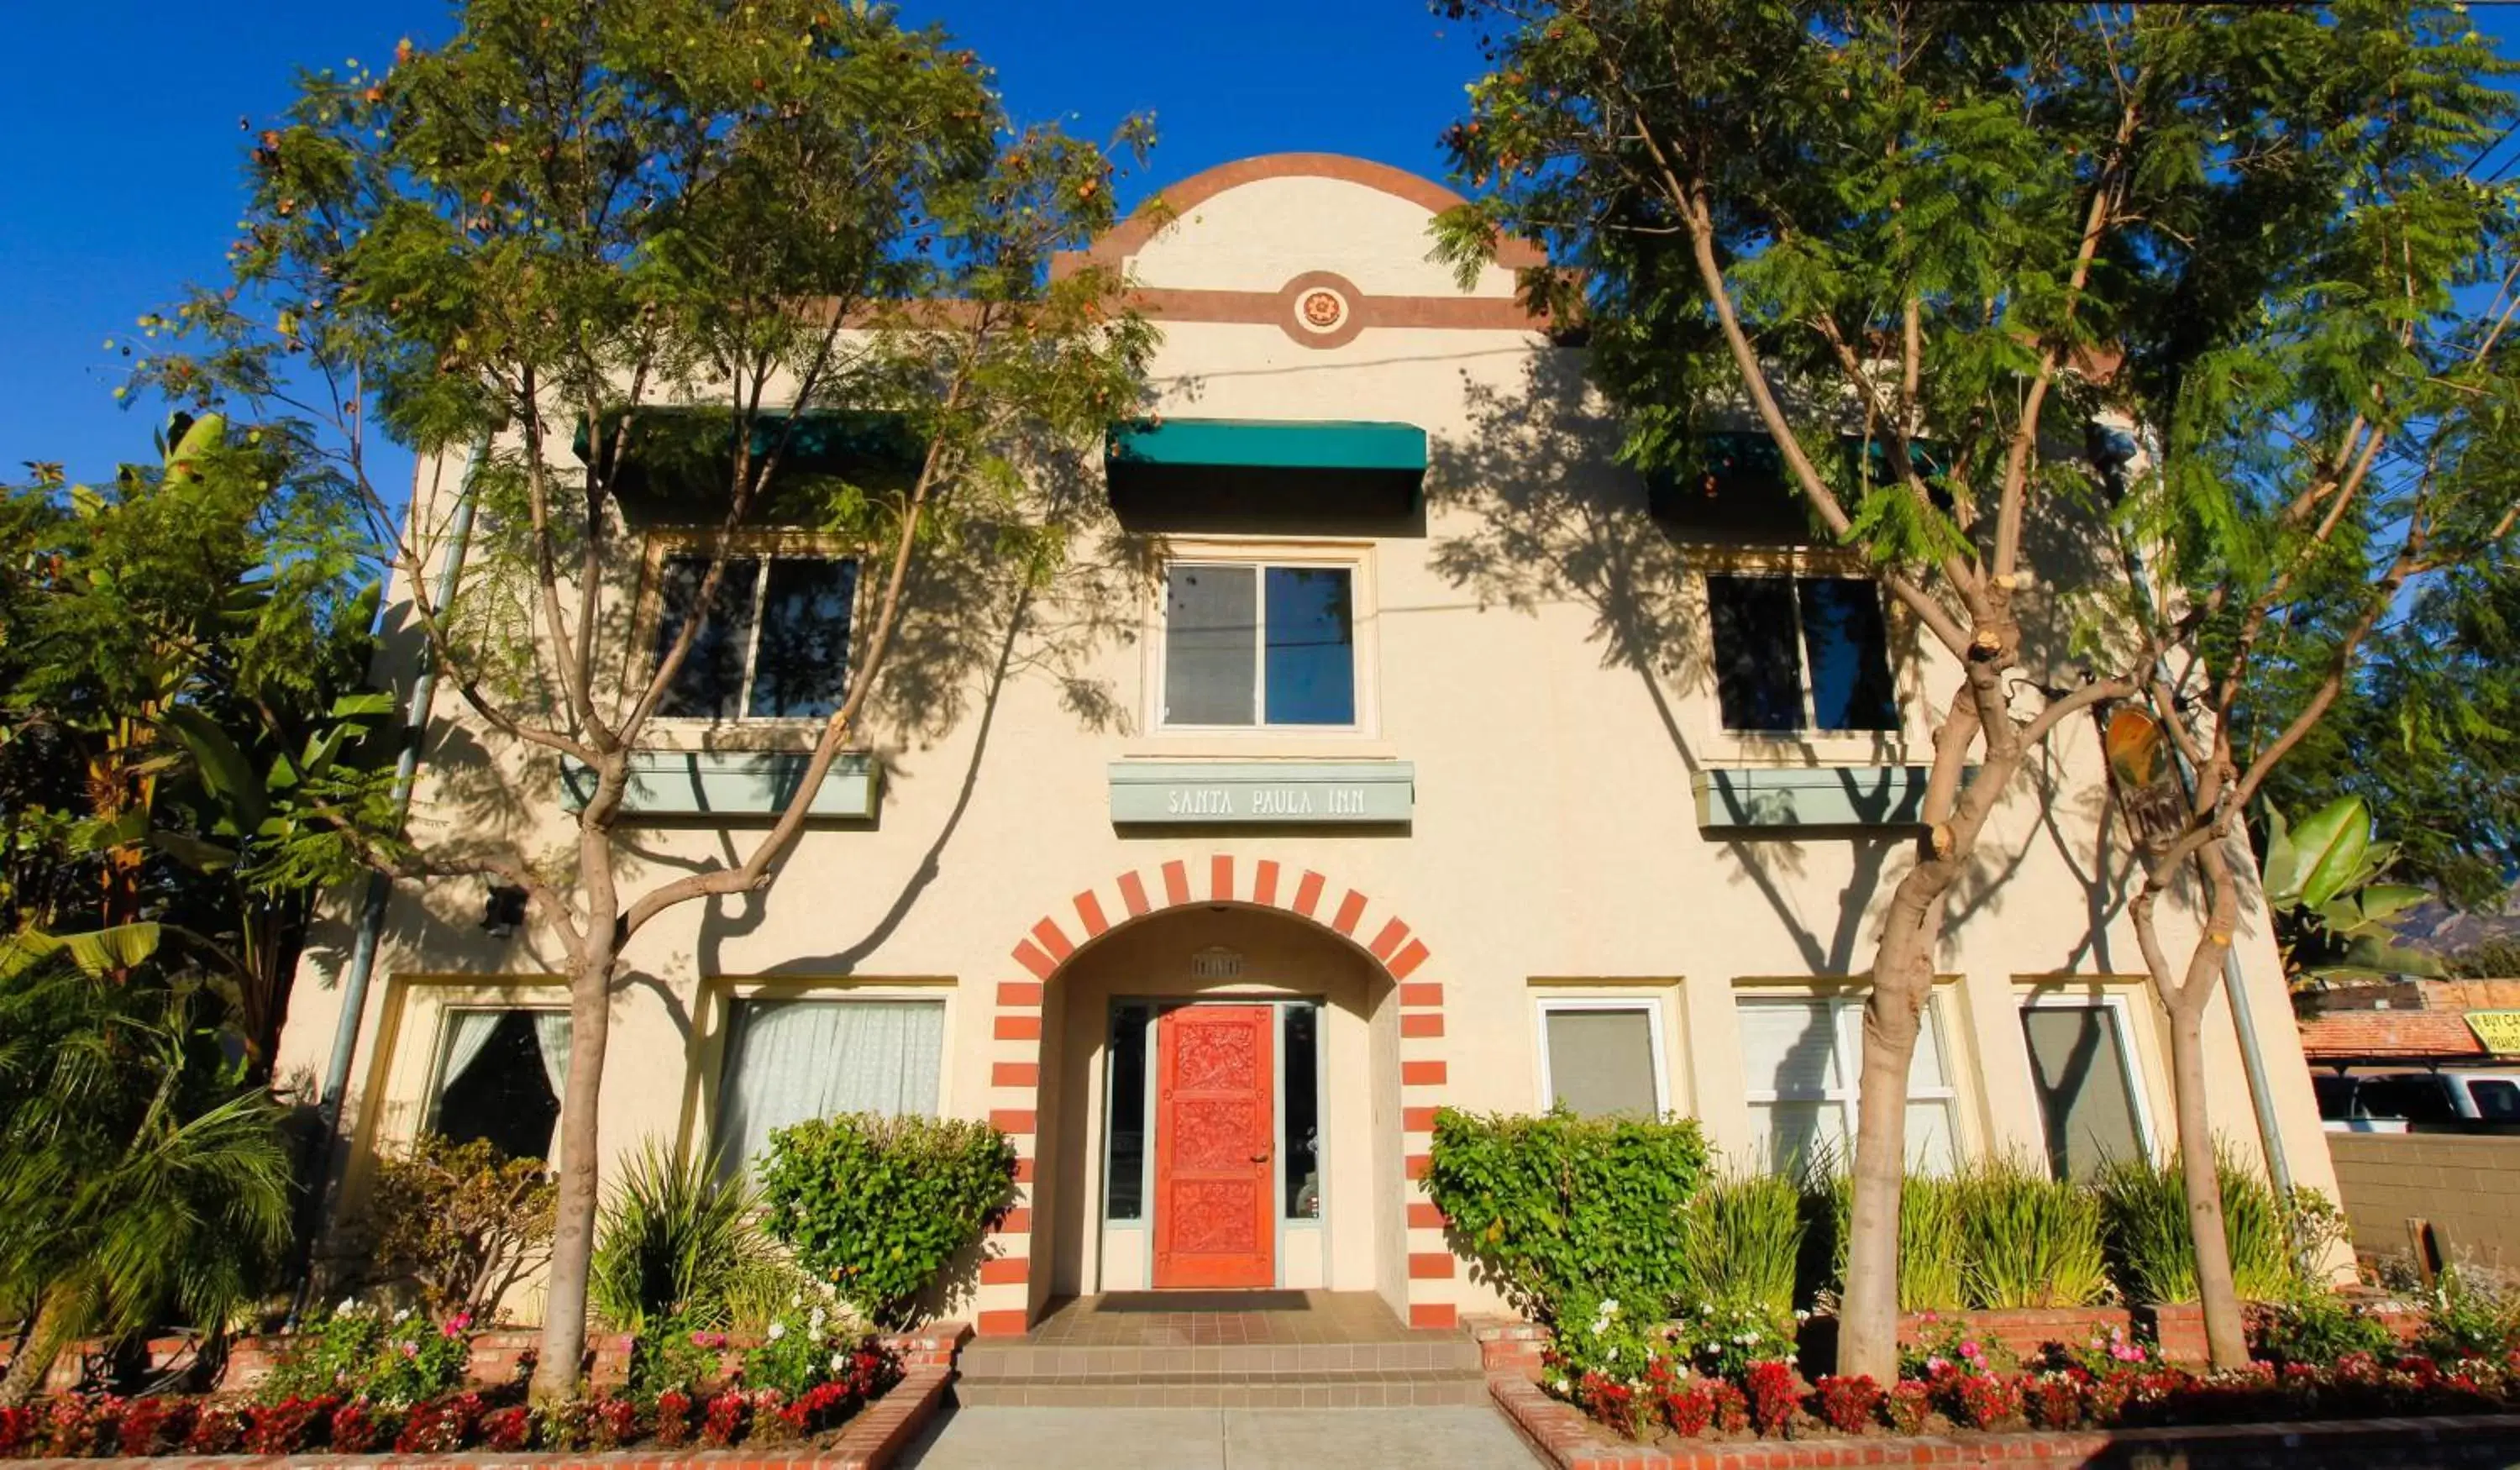 Facade/entrance, Property Building in Santa Paula Inn